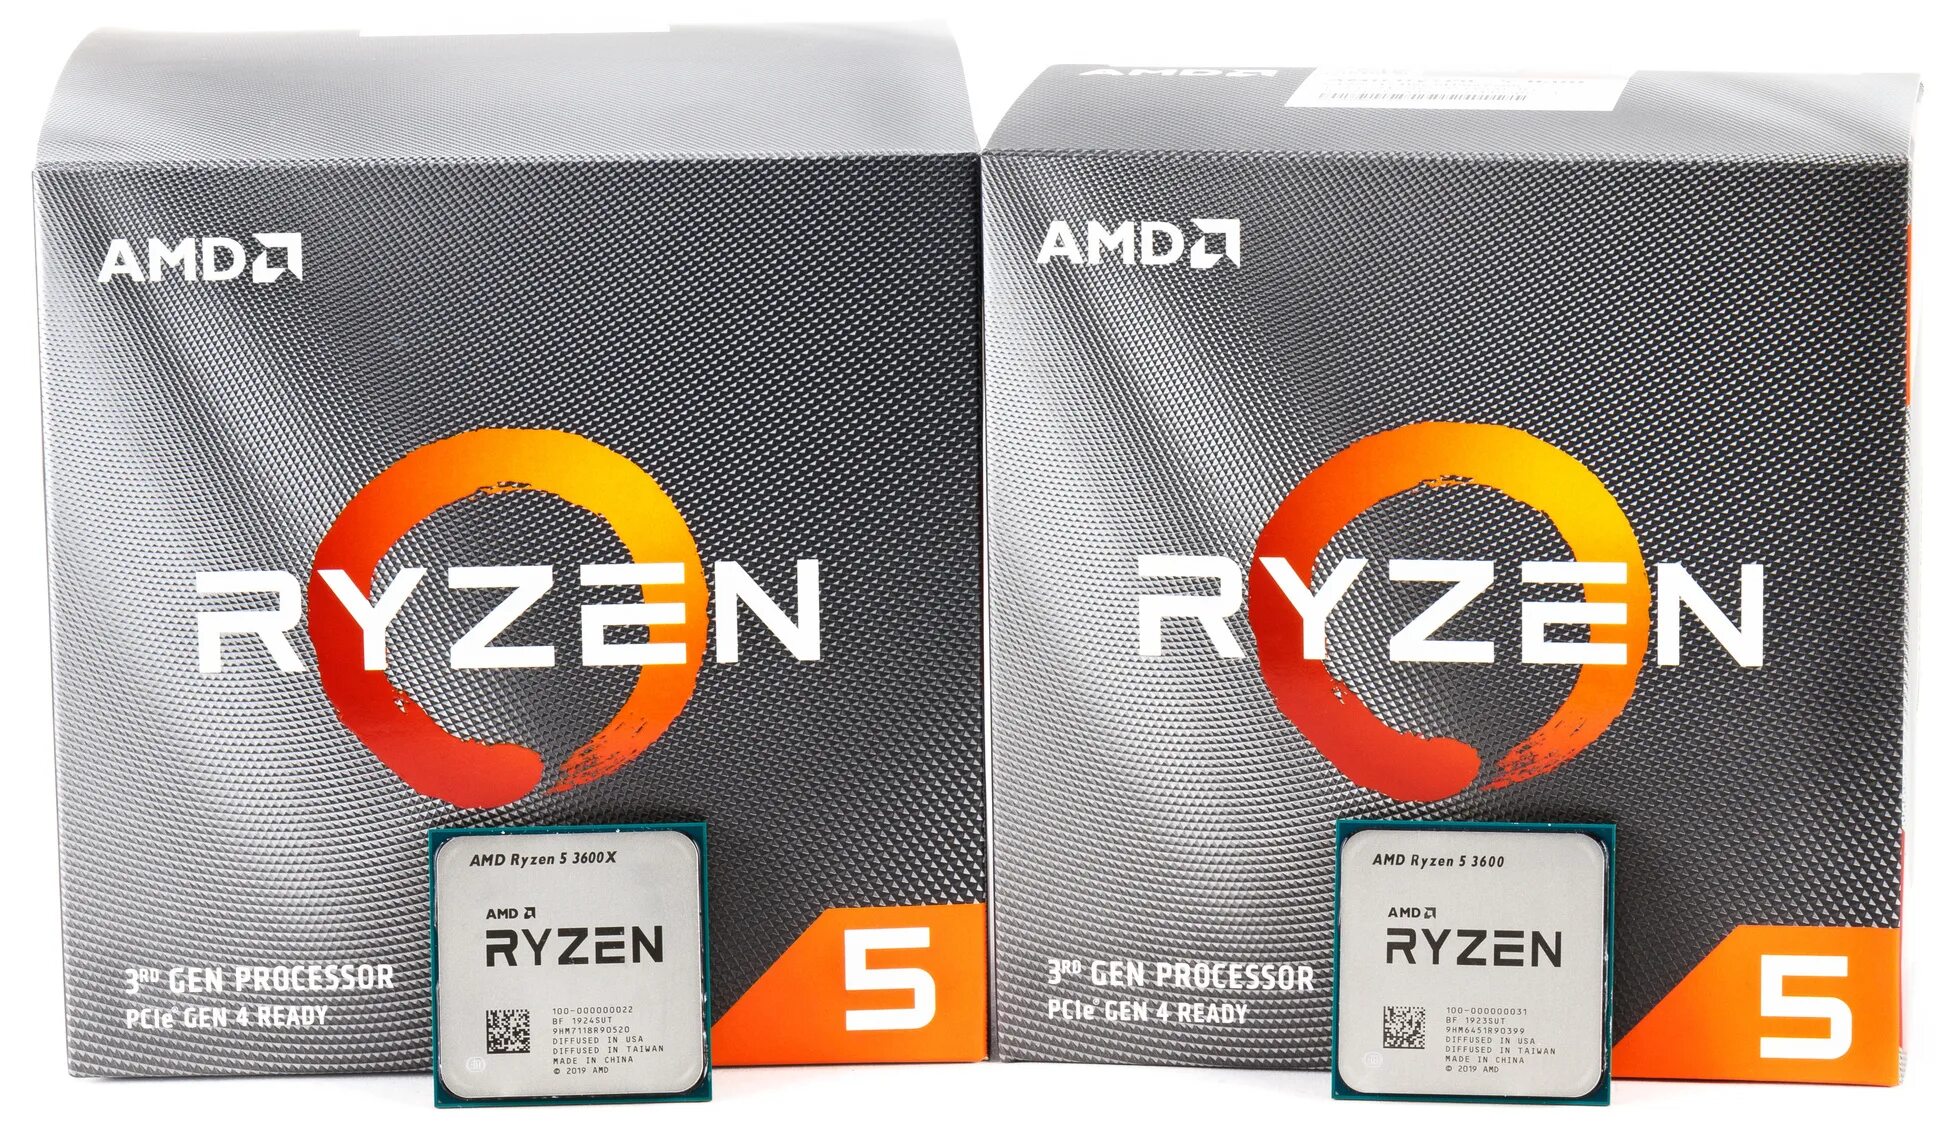 Ryzen 5 3600 6-Core Processor. AMD Ryzen 6-Core. AMD Ryzen 5 3600x. AMD Ryzen 5 5600 6-Core Processor.